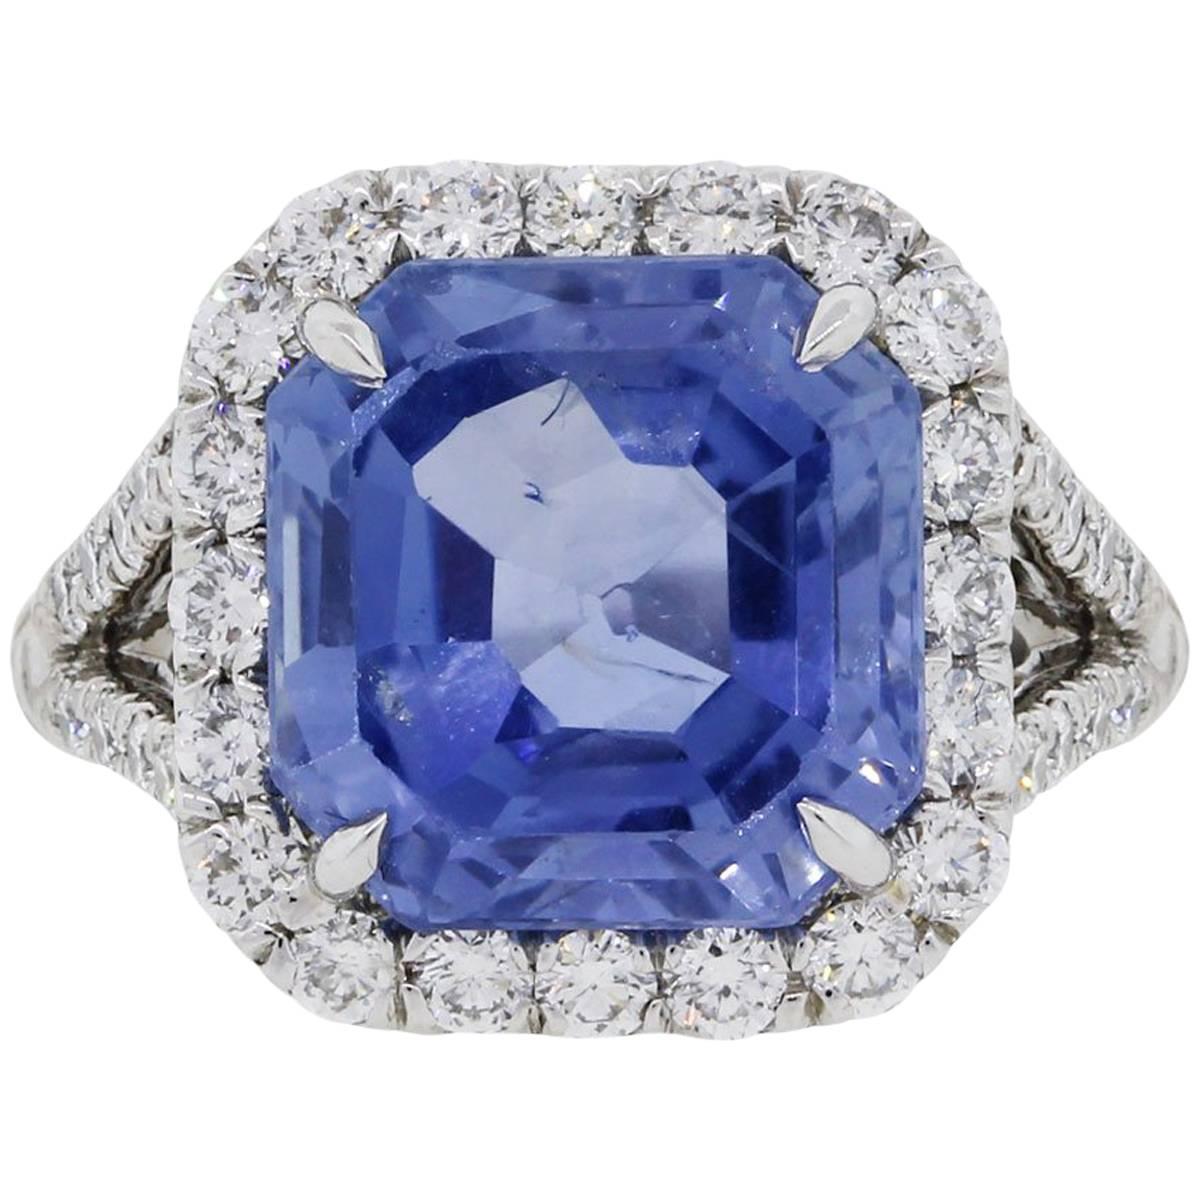 8.13 Carat Ceylon Sapphire Diamond Ring